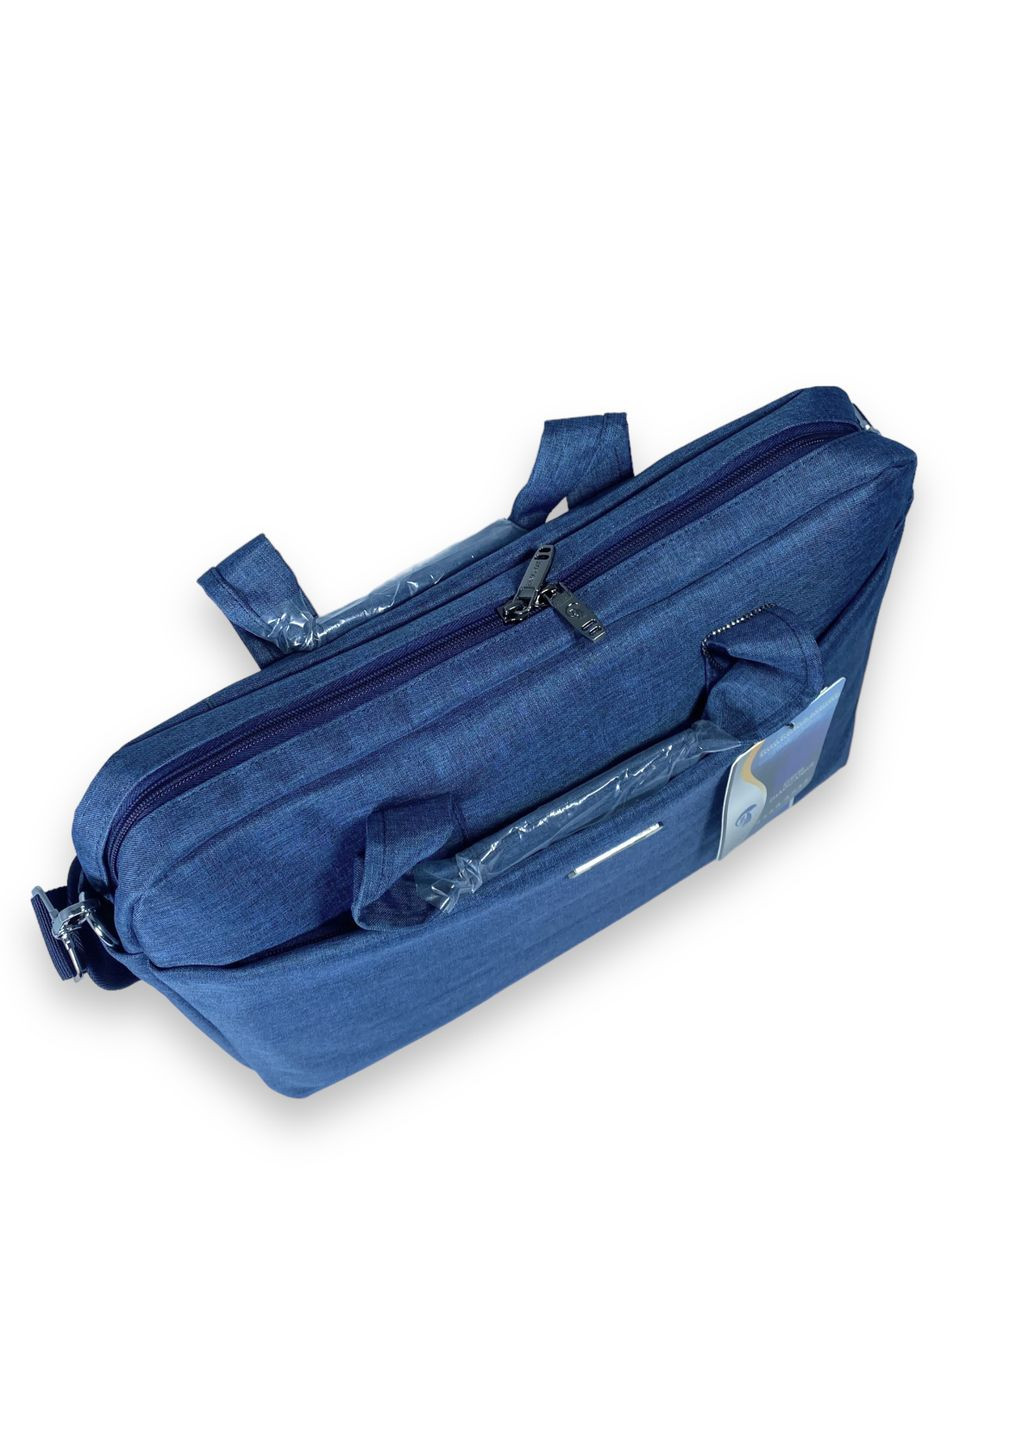 Портфель для ноутбука, одне відділення, кишені, ремінь, розмір 40*30*7 см синій Zhaocaique (286421629)